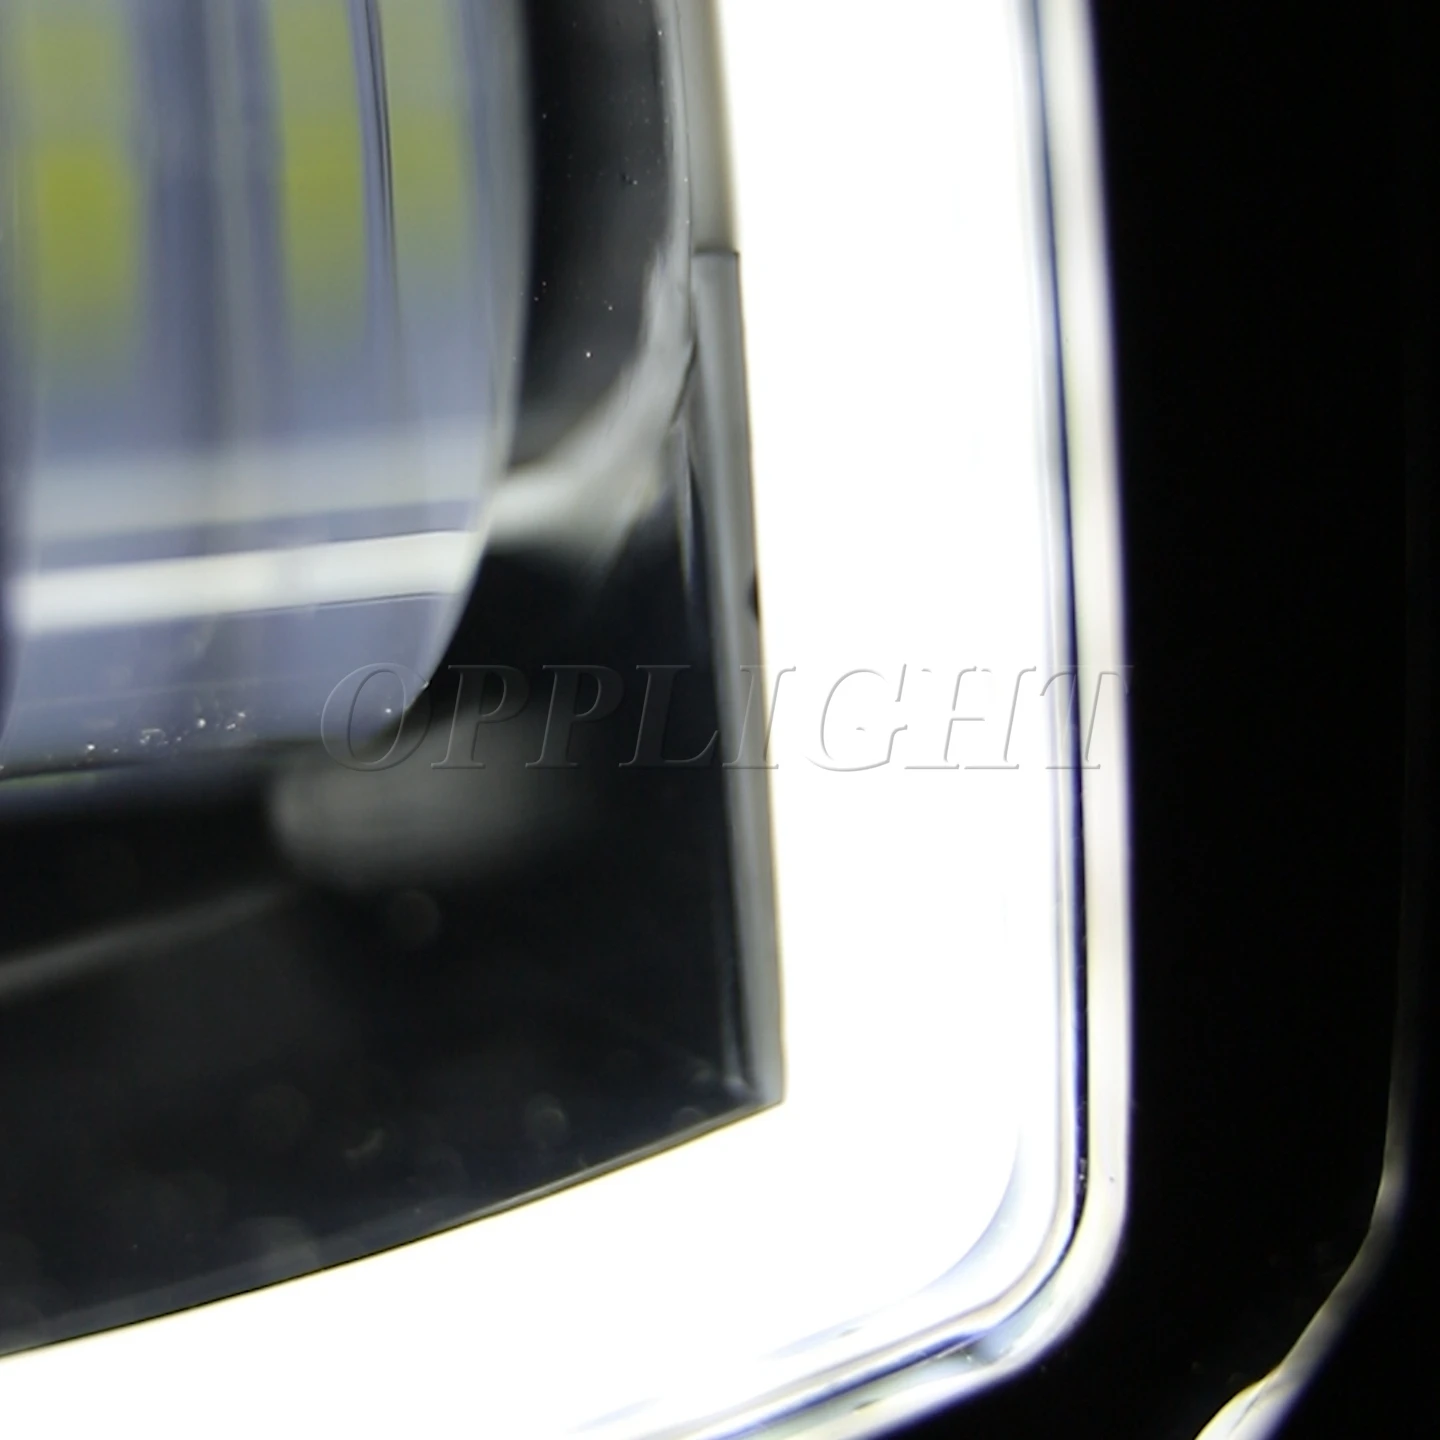 Гало кольца 30 Вт напрямую с фабрики водонепроницаемый точечный луч светодиодная фара дальнего света автомобиля лазером LED рабочий свет для автомобиля мотоцикла Грузовик